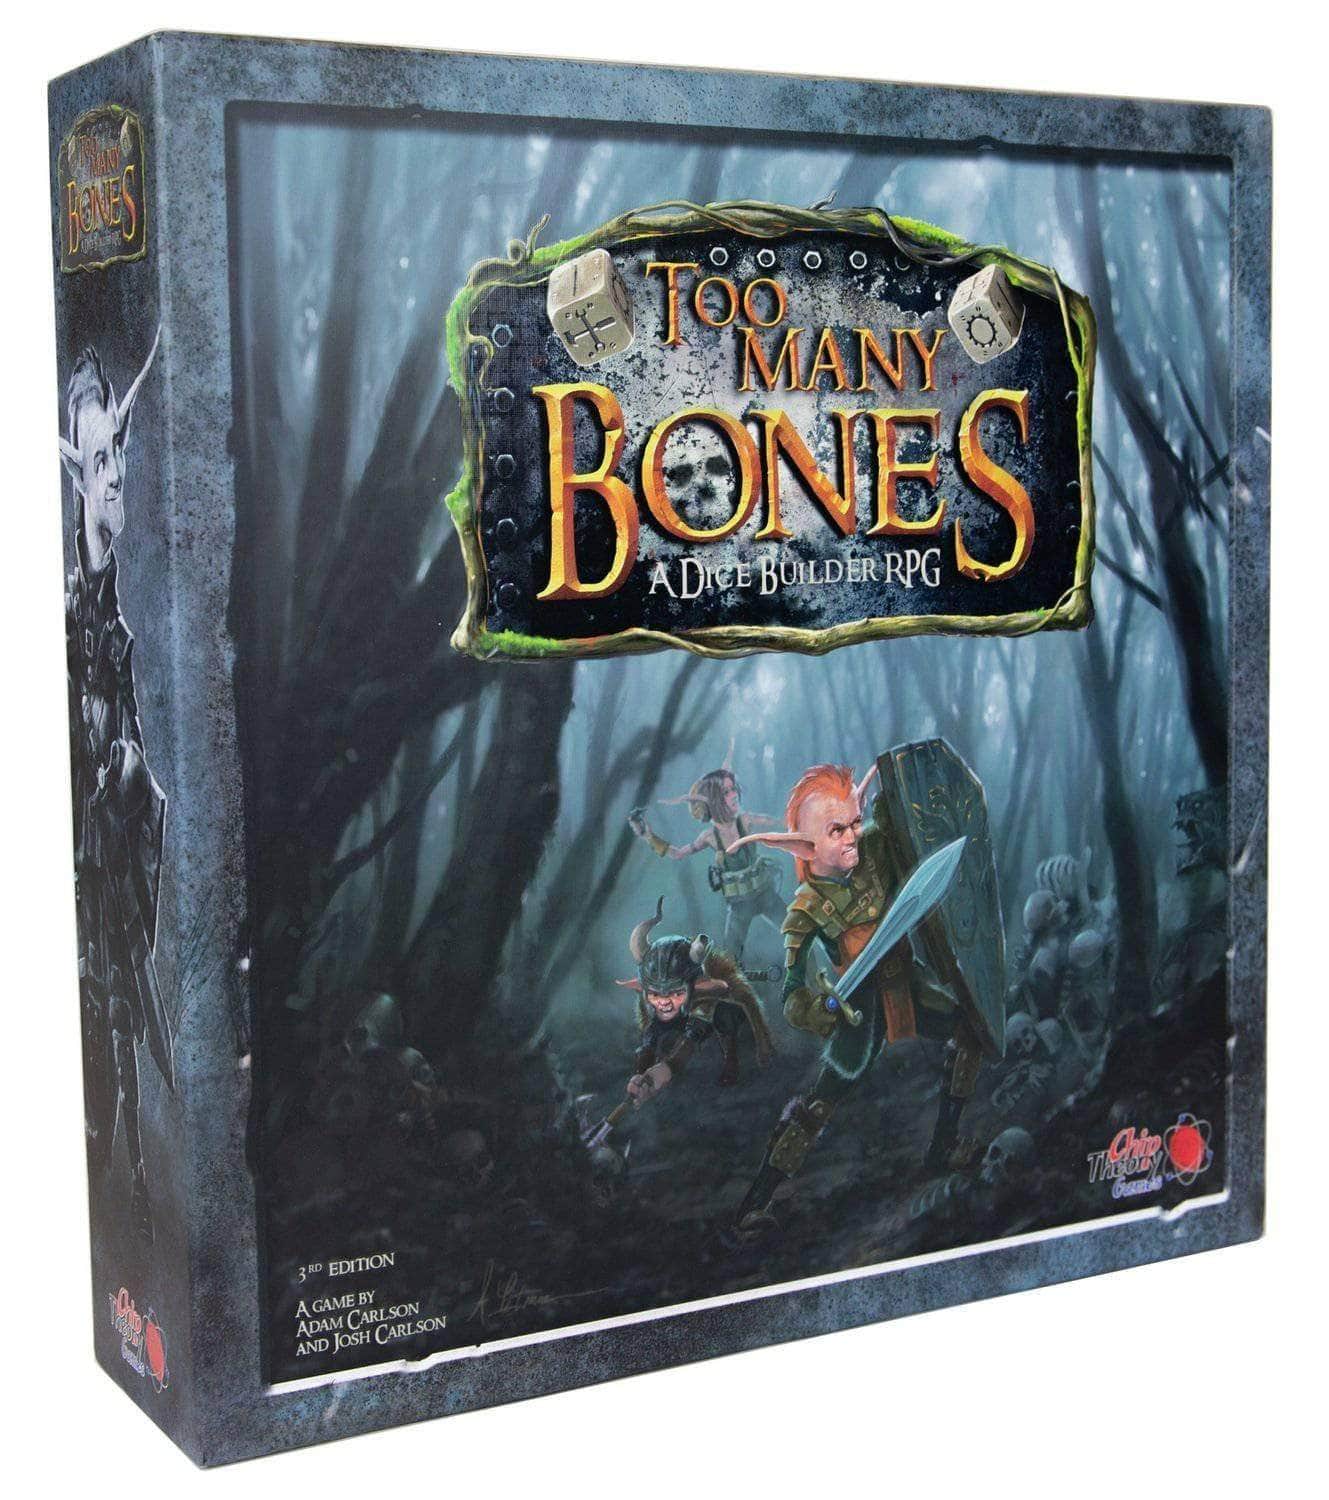 Zu viele Knochen: Core Game Ding & Dent (Retail Edition) Einzelhandelsbrettspiel Chip Theory Games 0704725644067 KS000143E